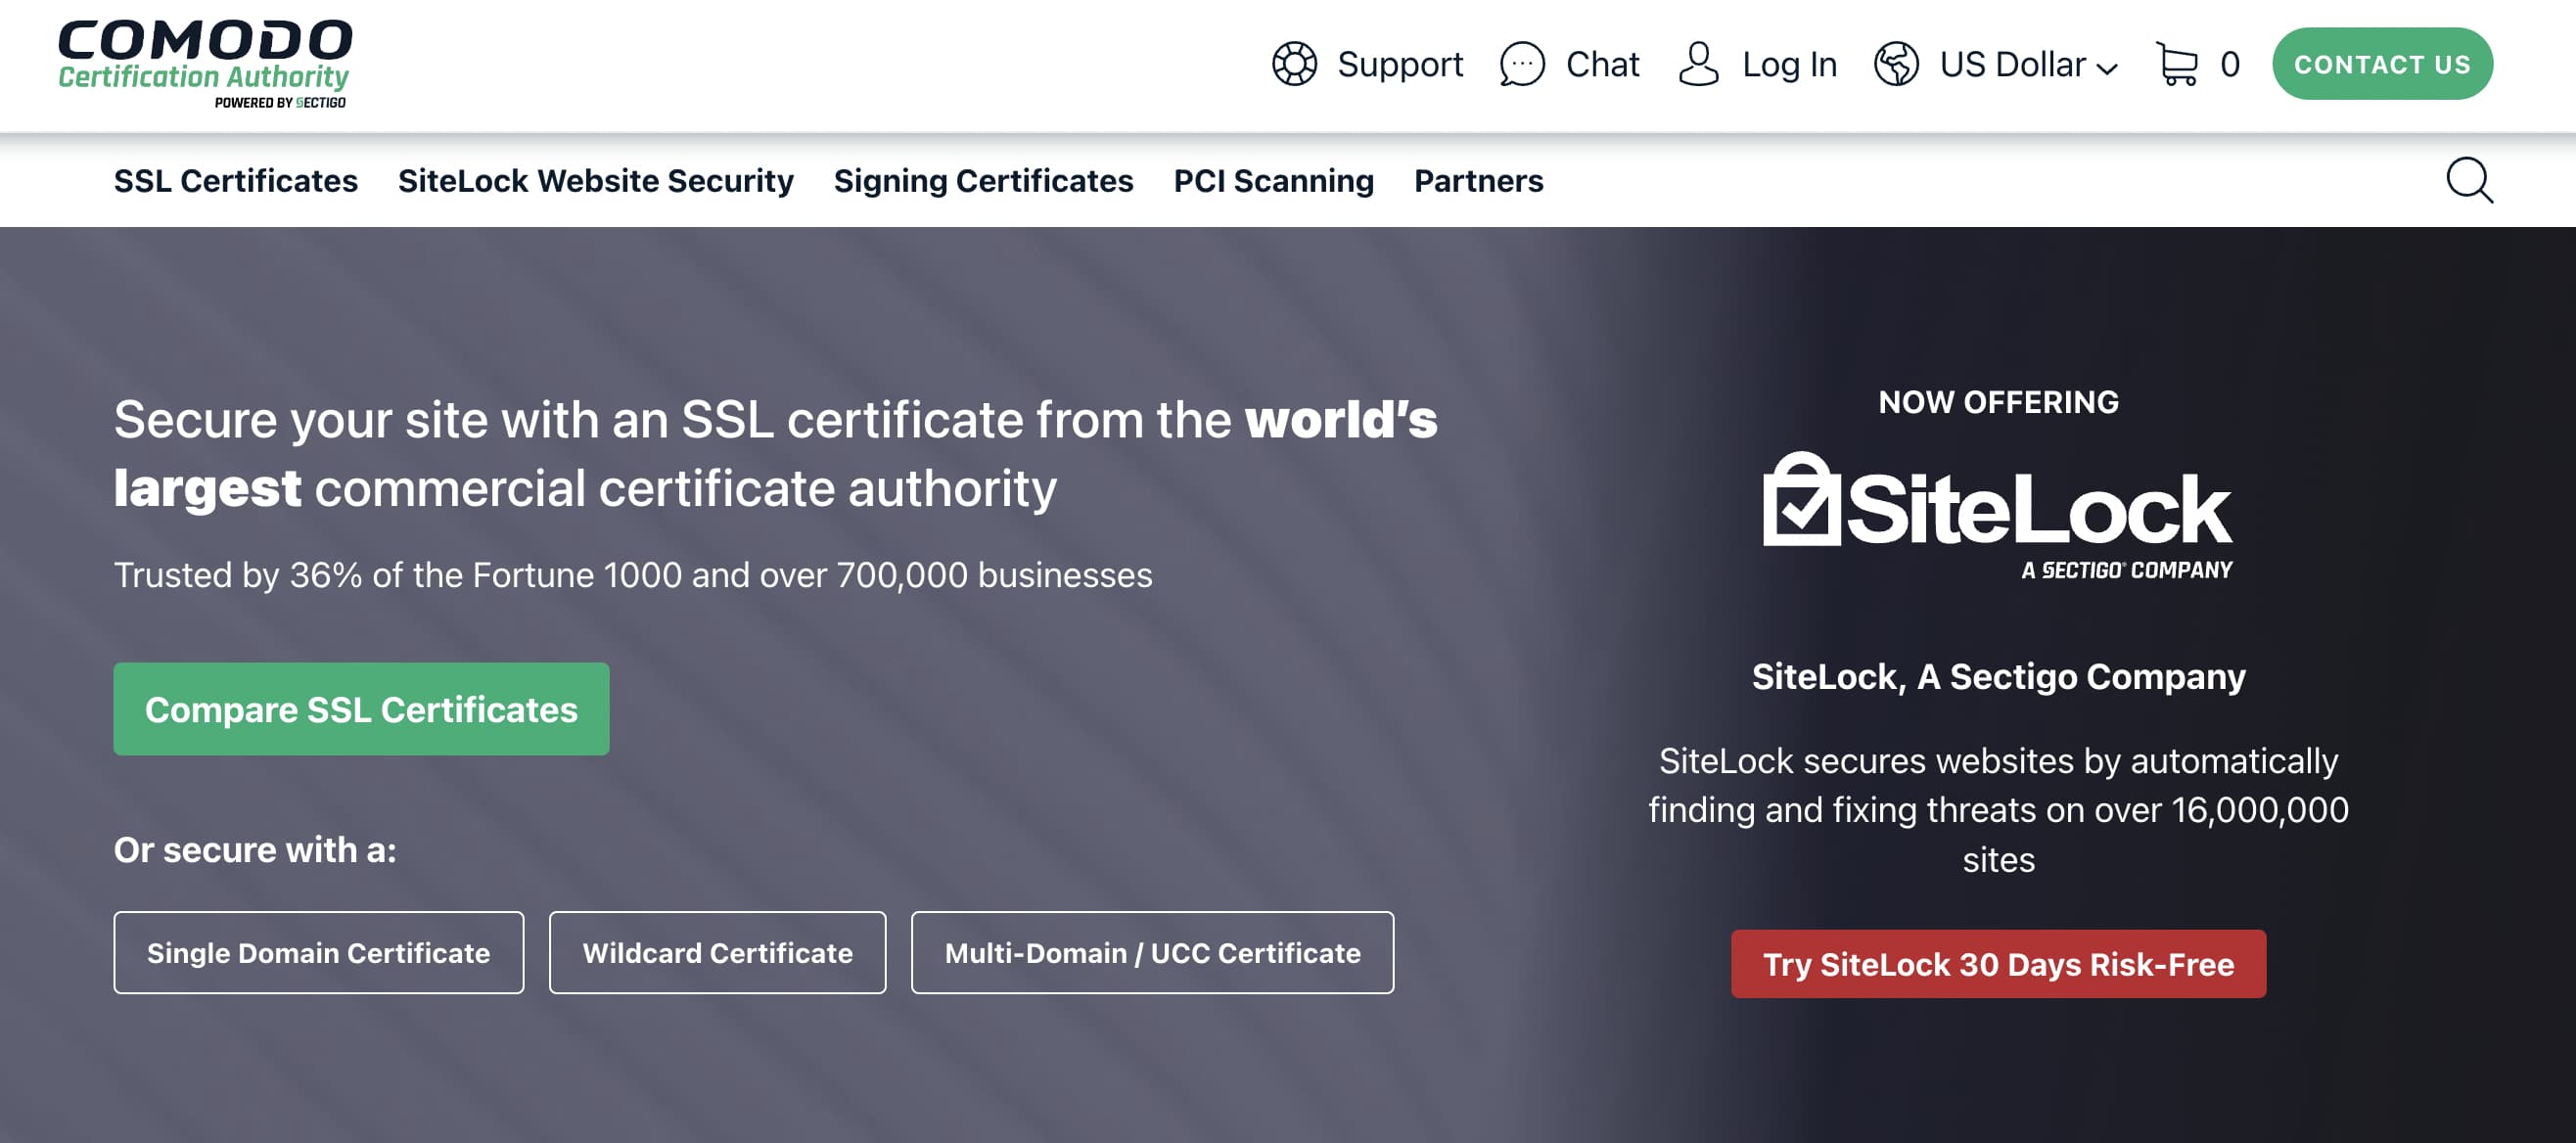 Certificado SSL de bajo costo de Comodo